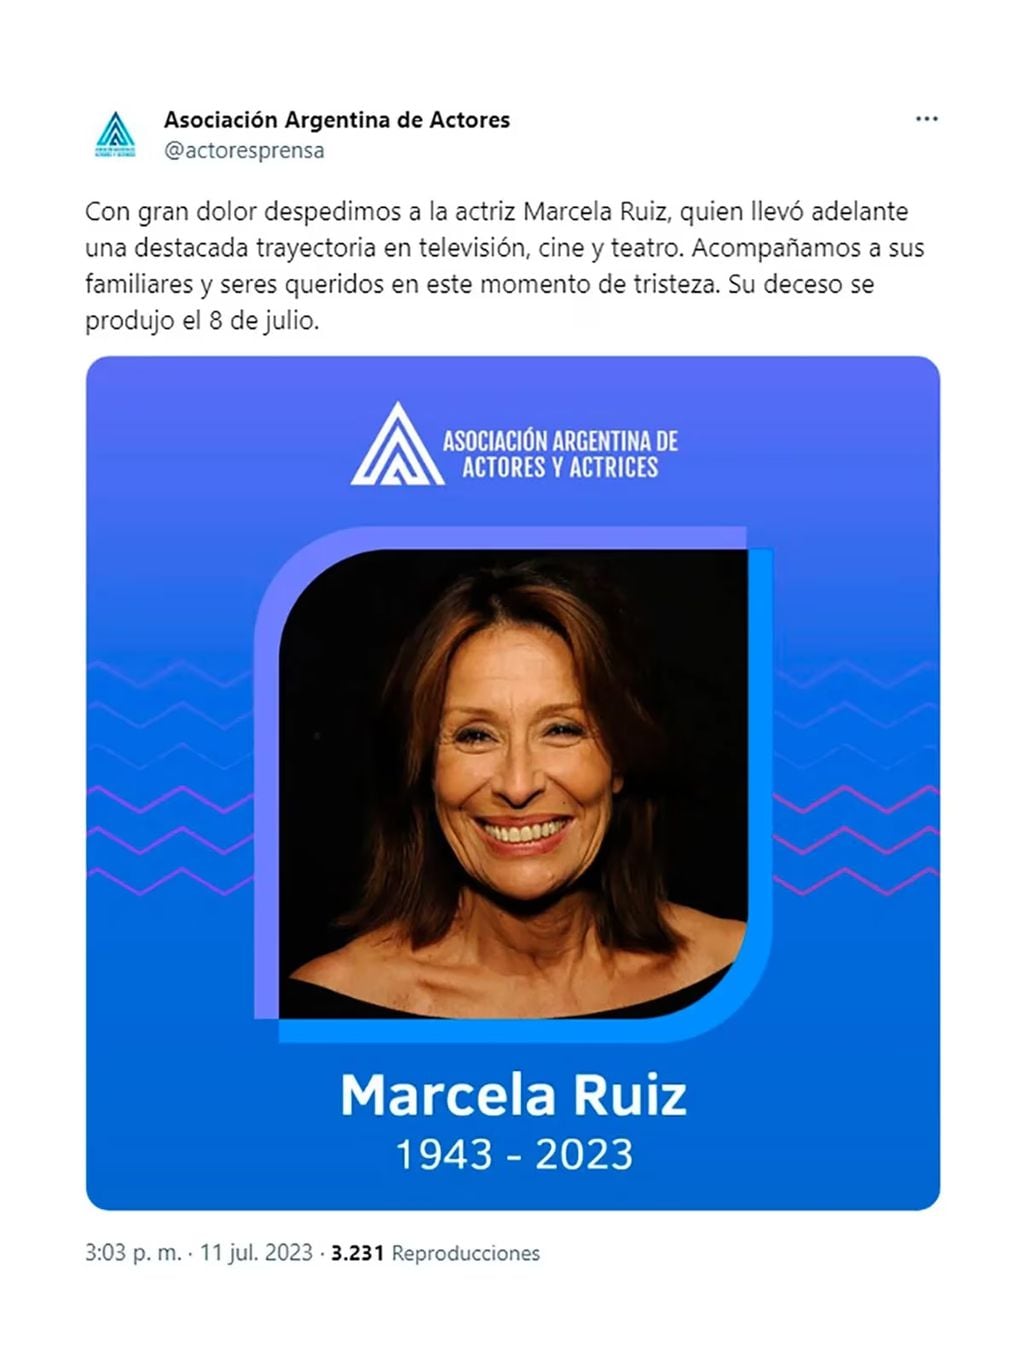 La publicación de la Asociación argentina de actores y actrices comunicando el fallecimiento de Marcela Ruiz. (Foto: captura de pantalla)